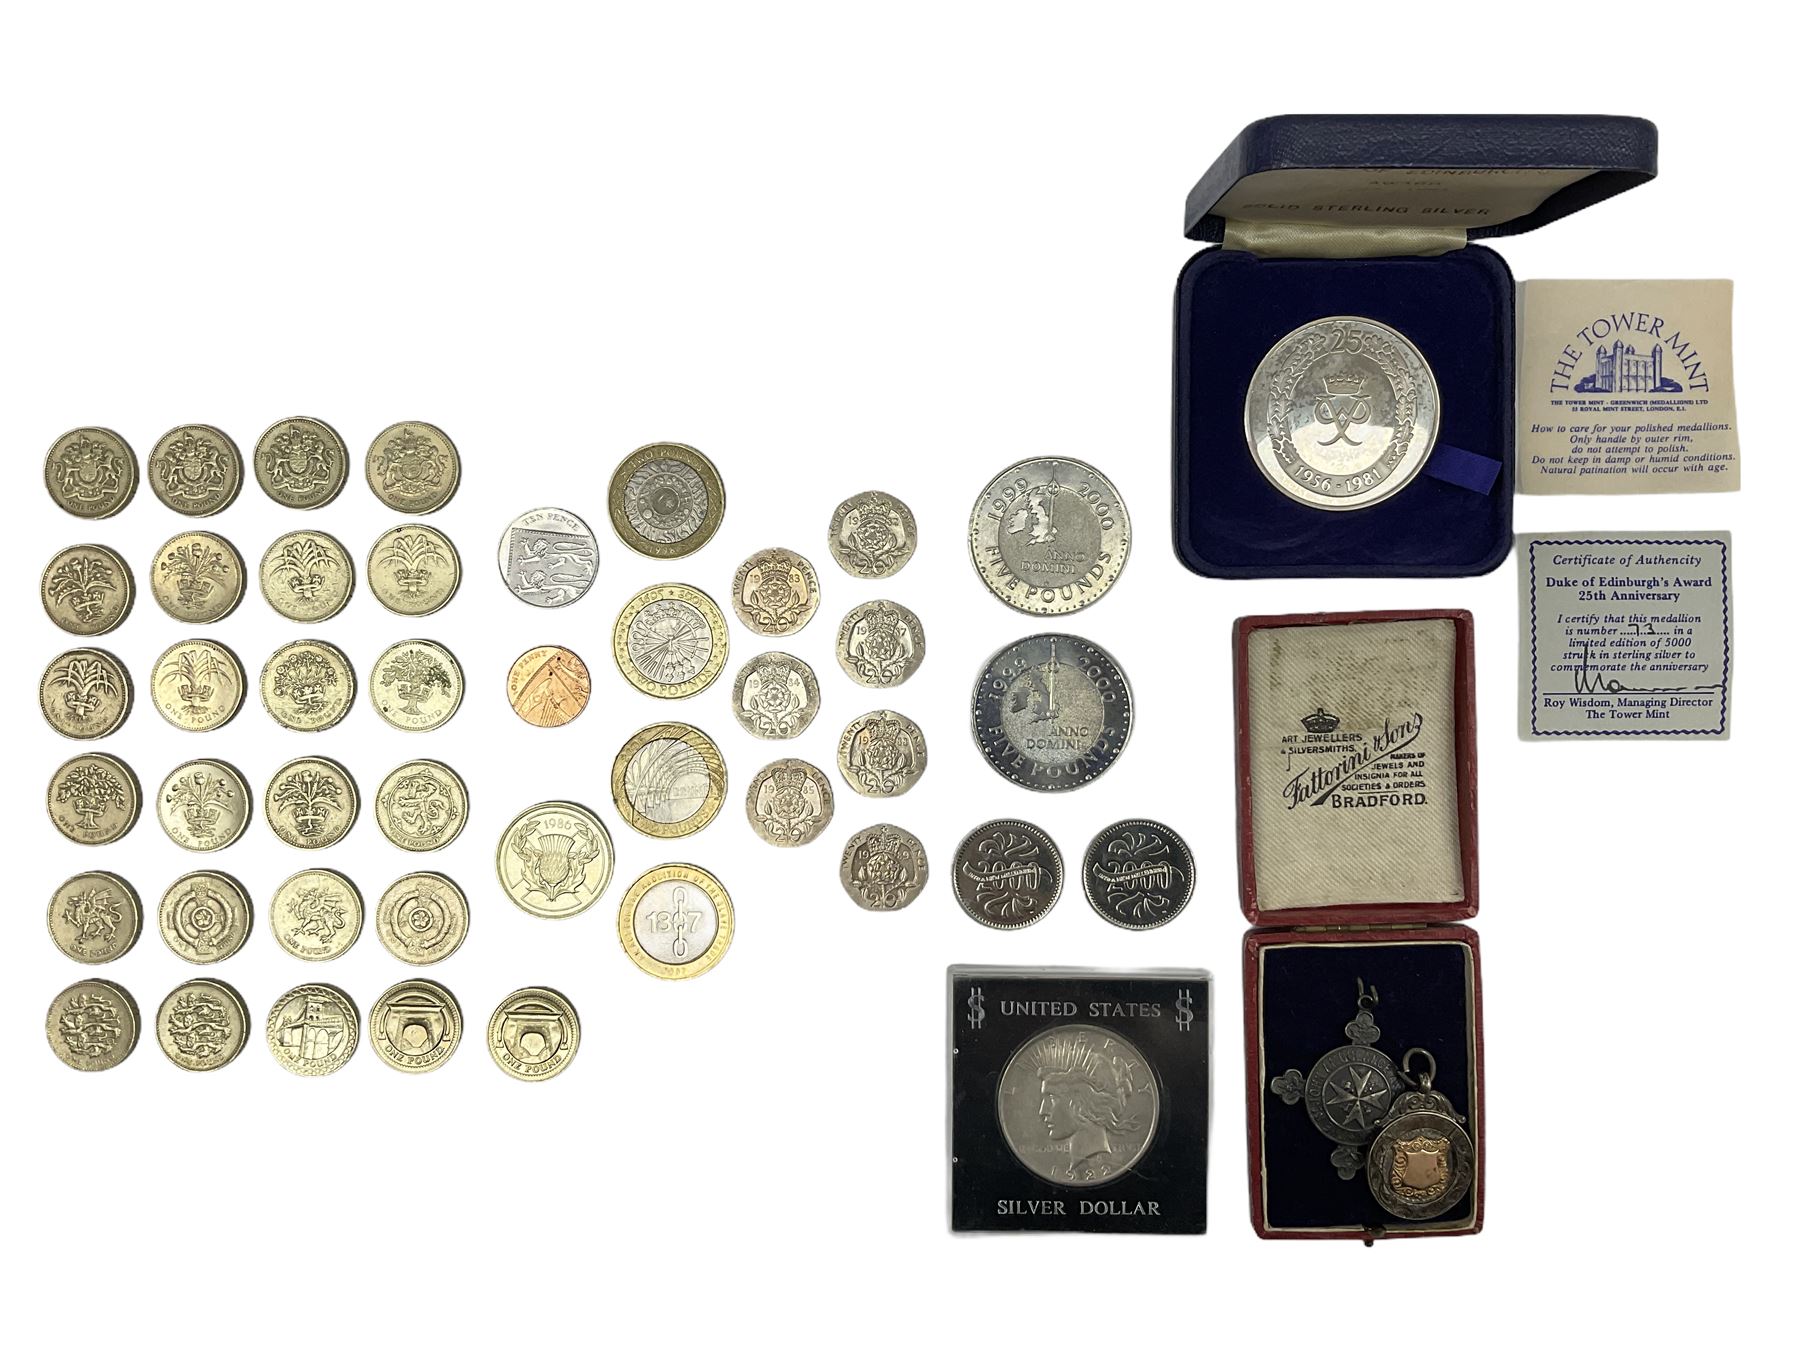 Queen Elizabeth II old round one pound coins